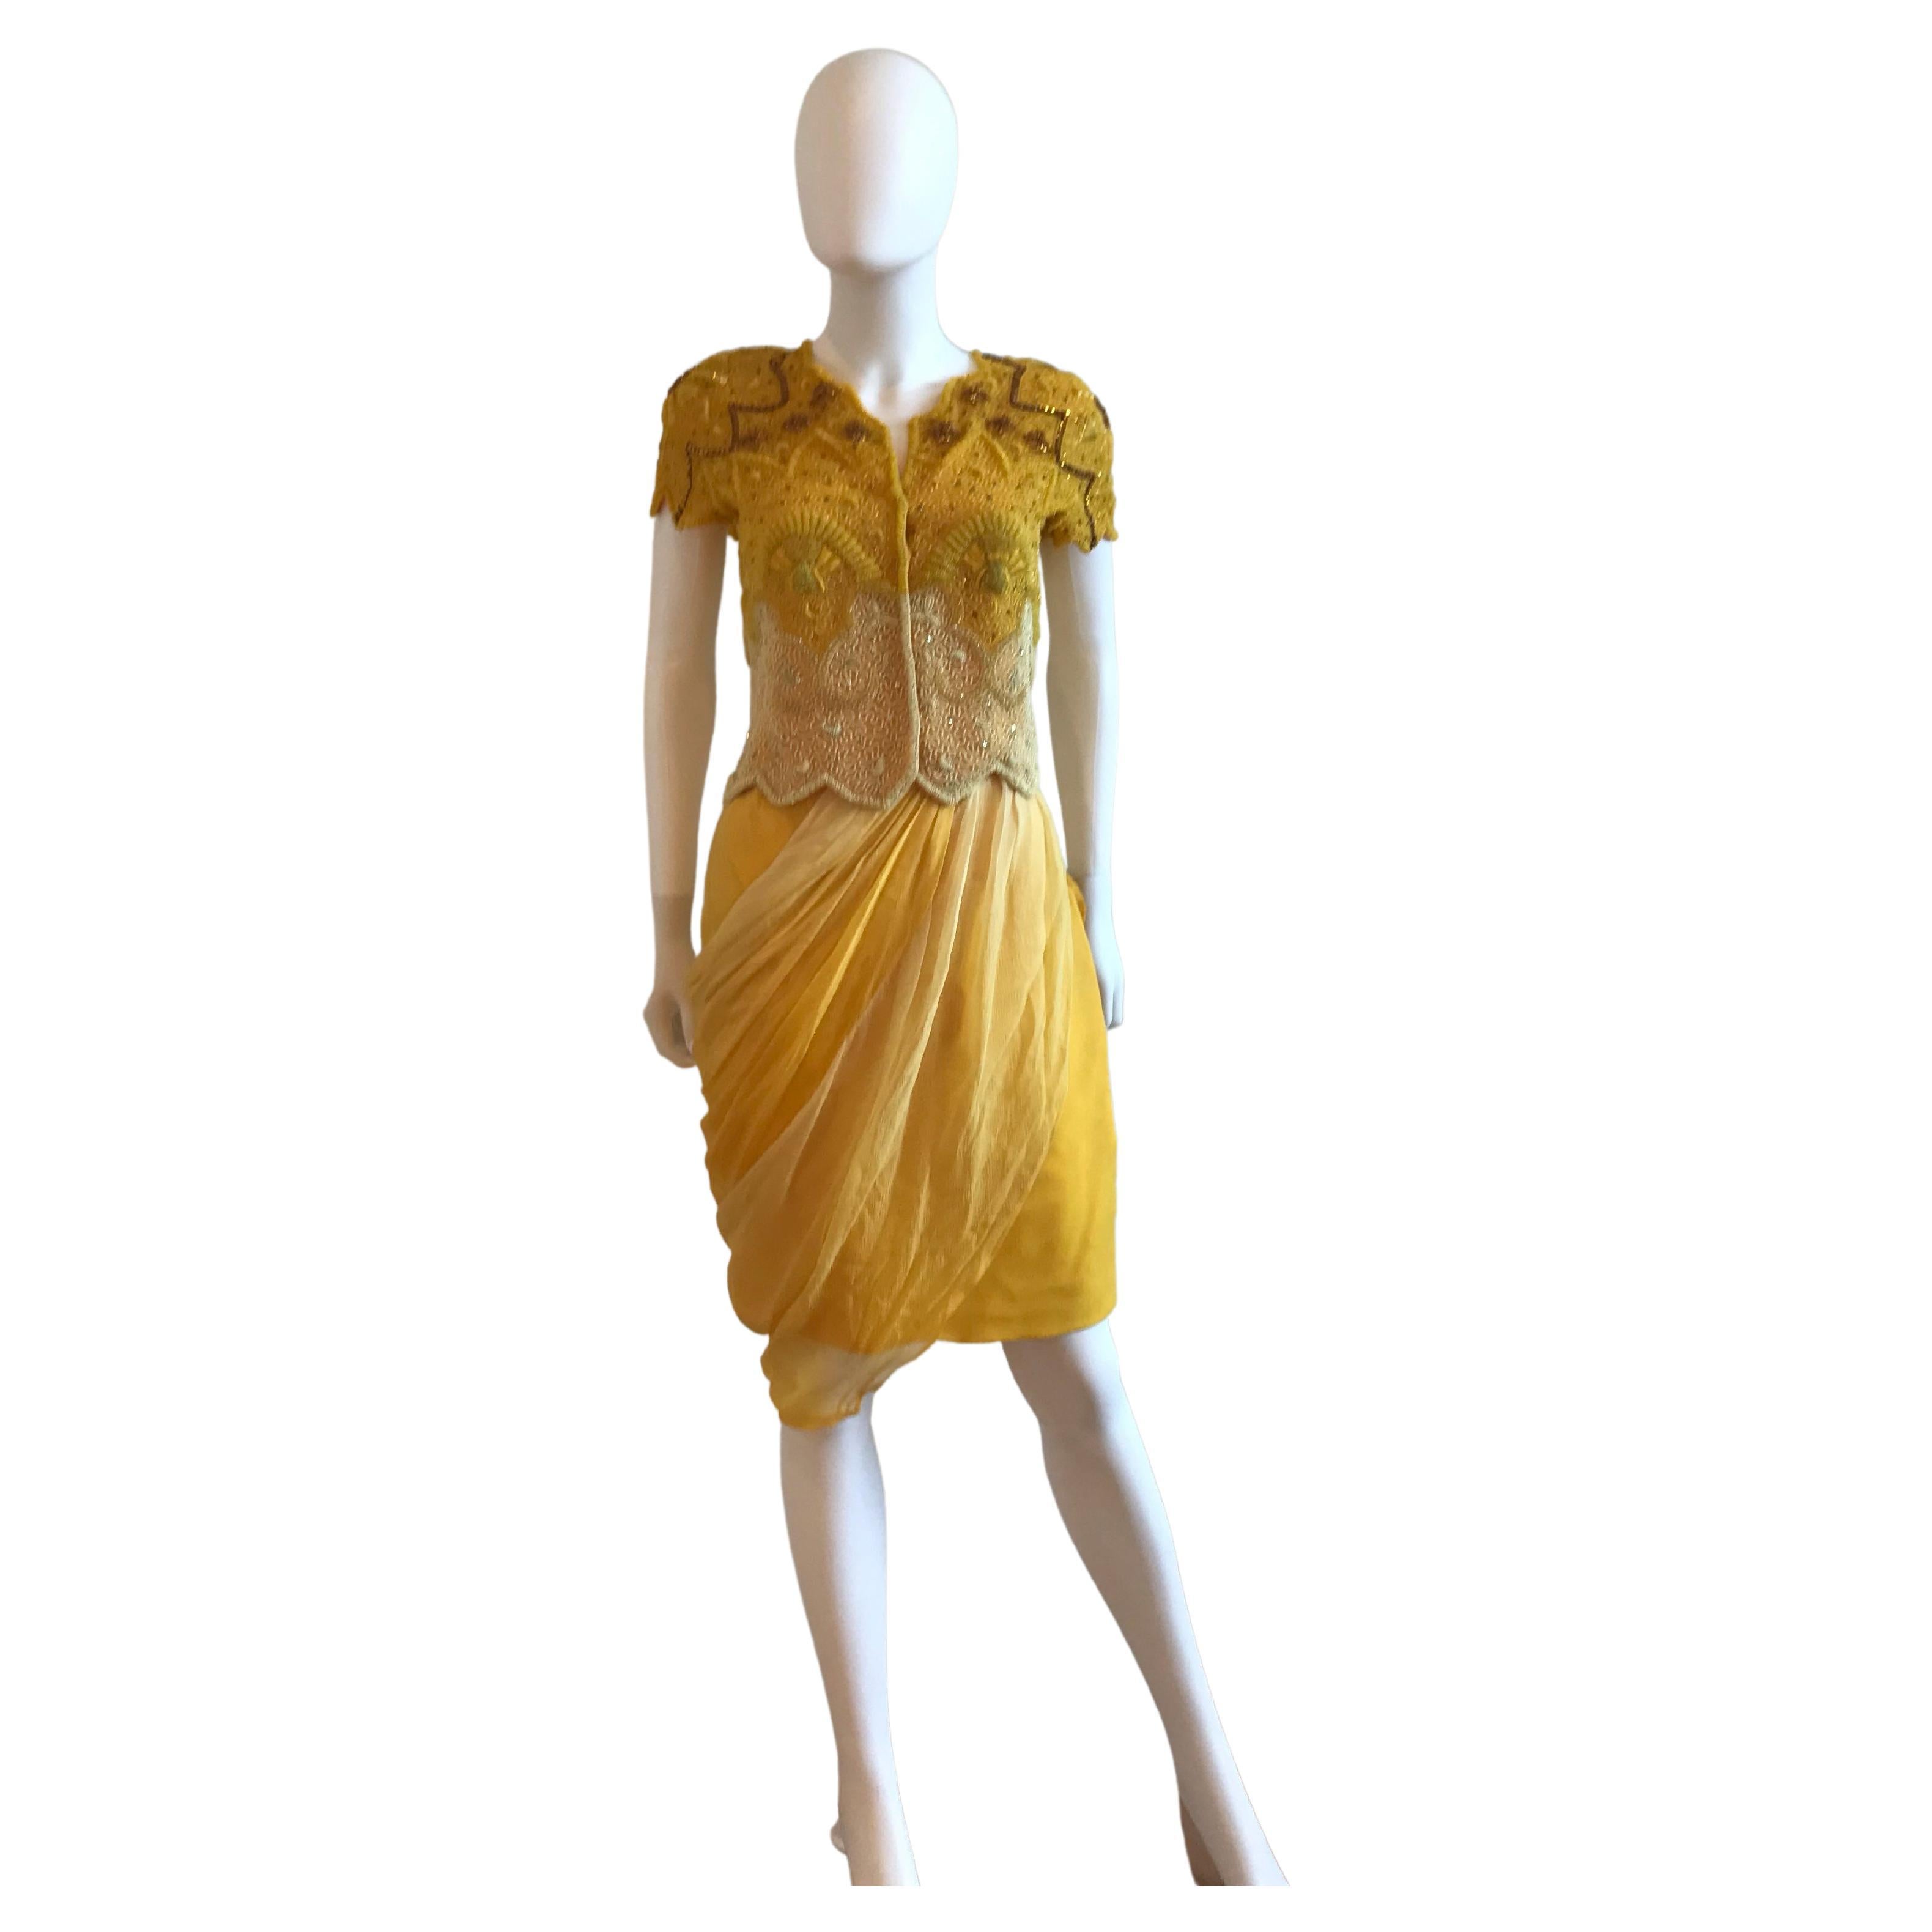 yellow beaded skirt